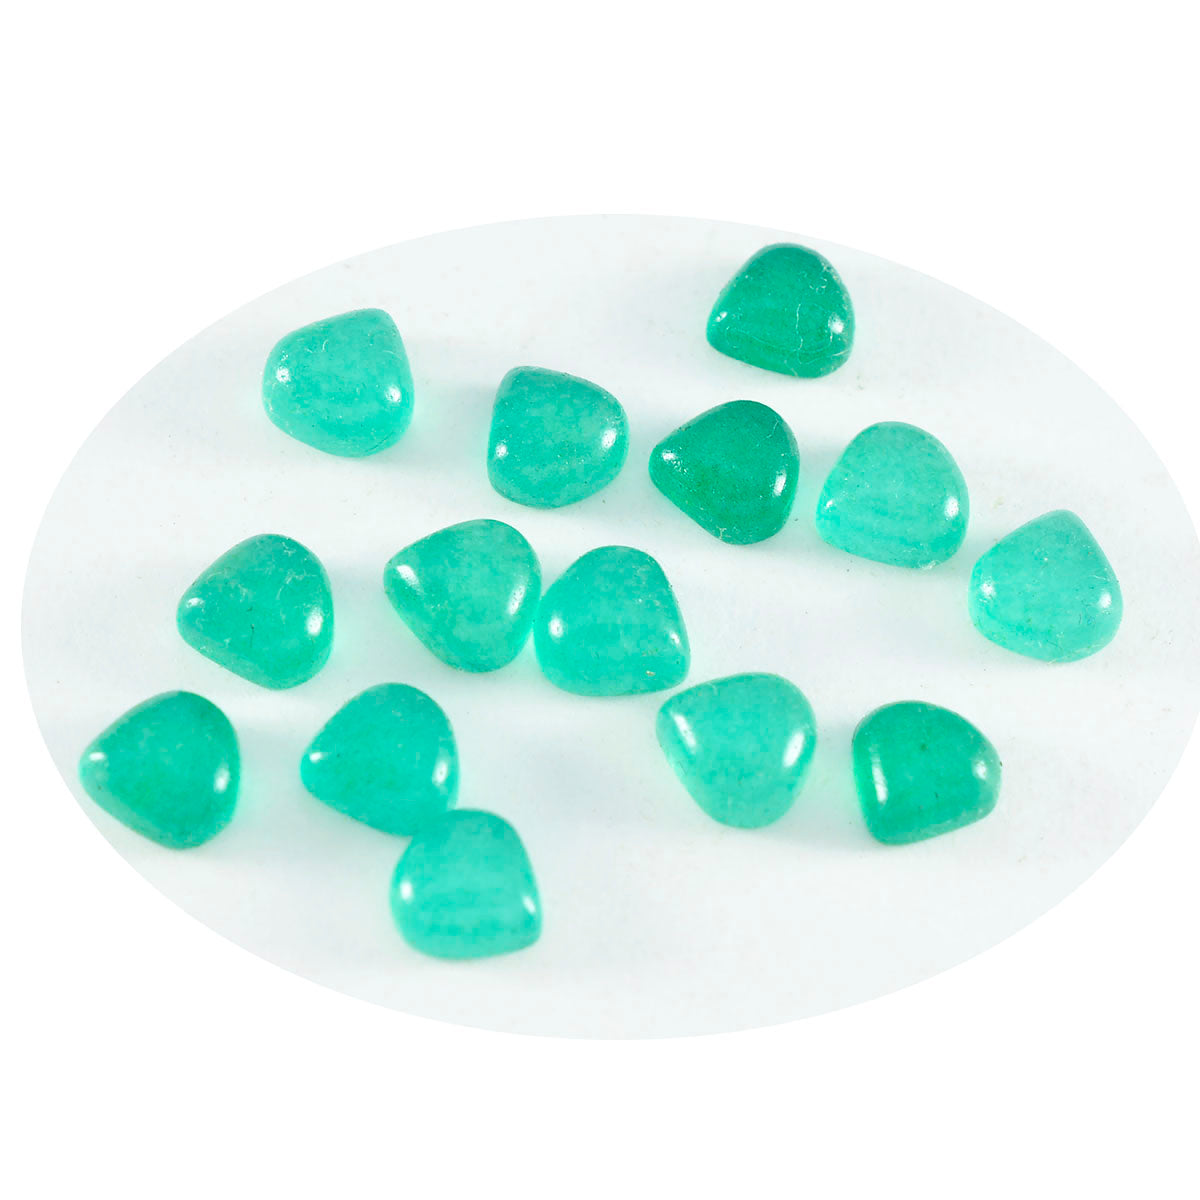 Riyogems 1 pieza cabujón de ónix verde 5x5mm forma de corazón gemas sueltas de calidad asombrosa